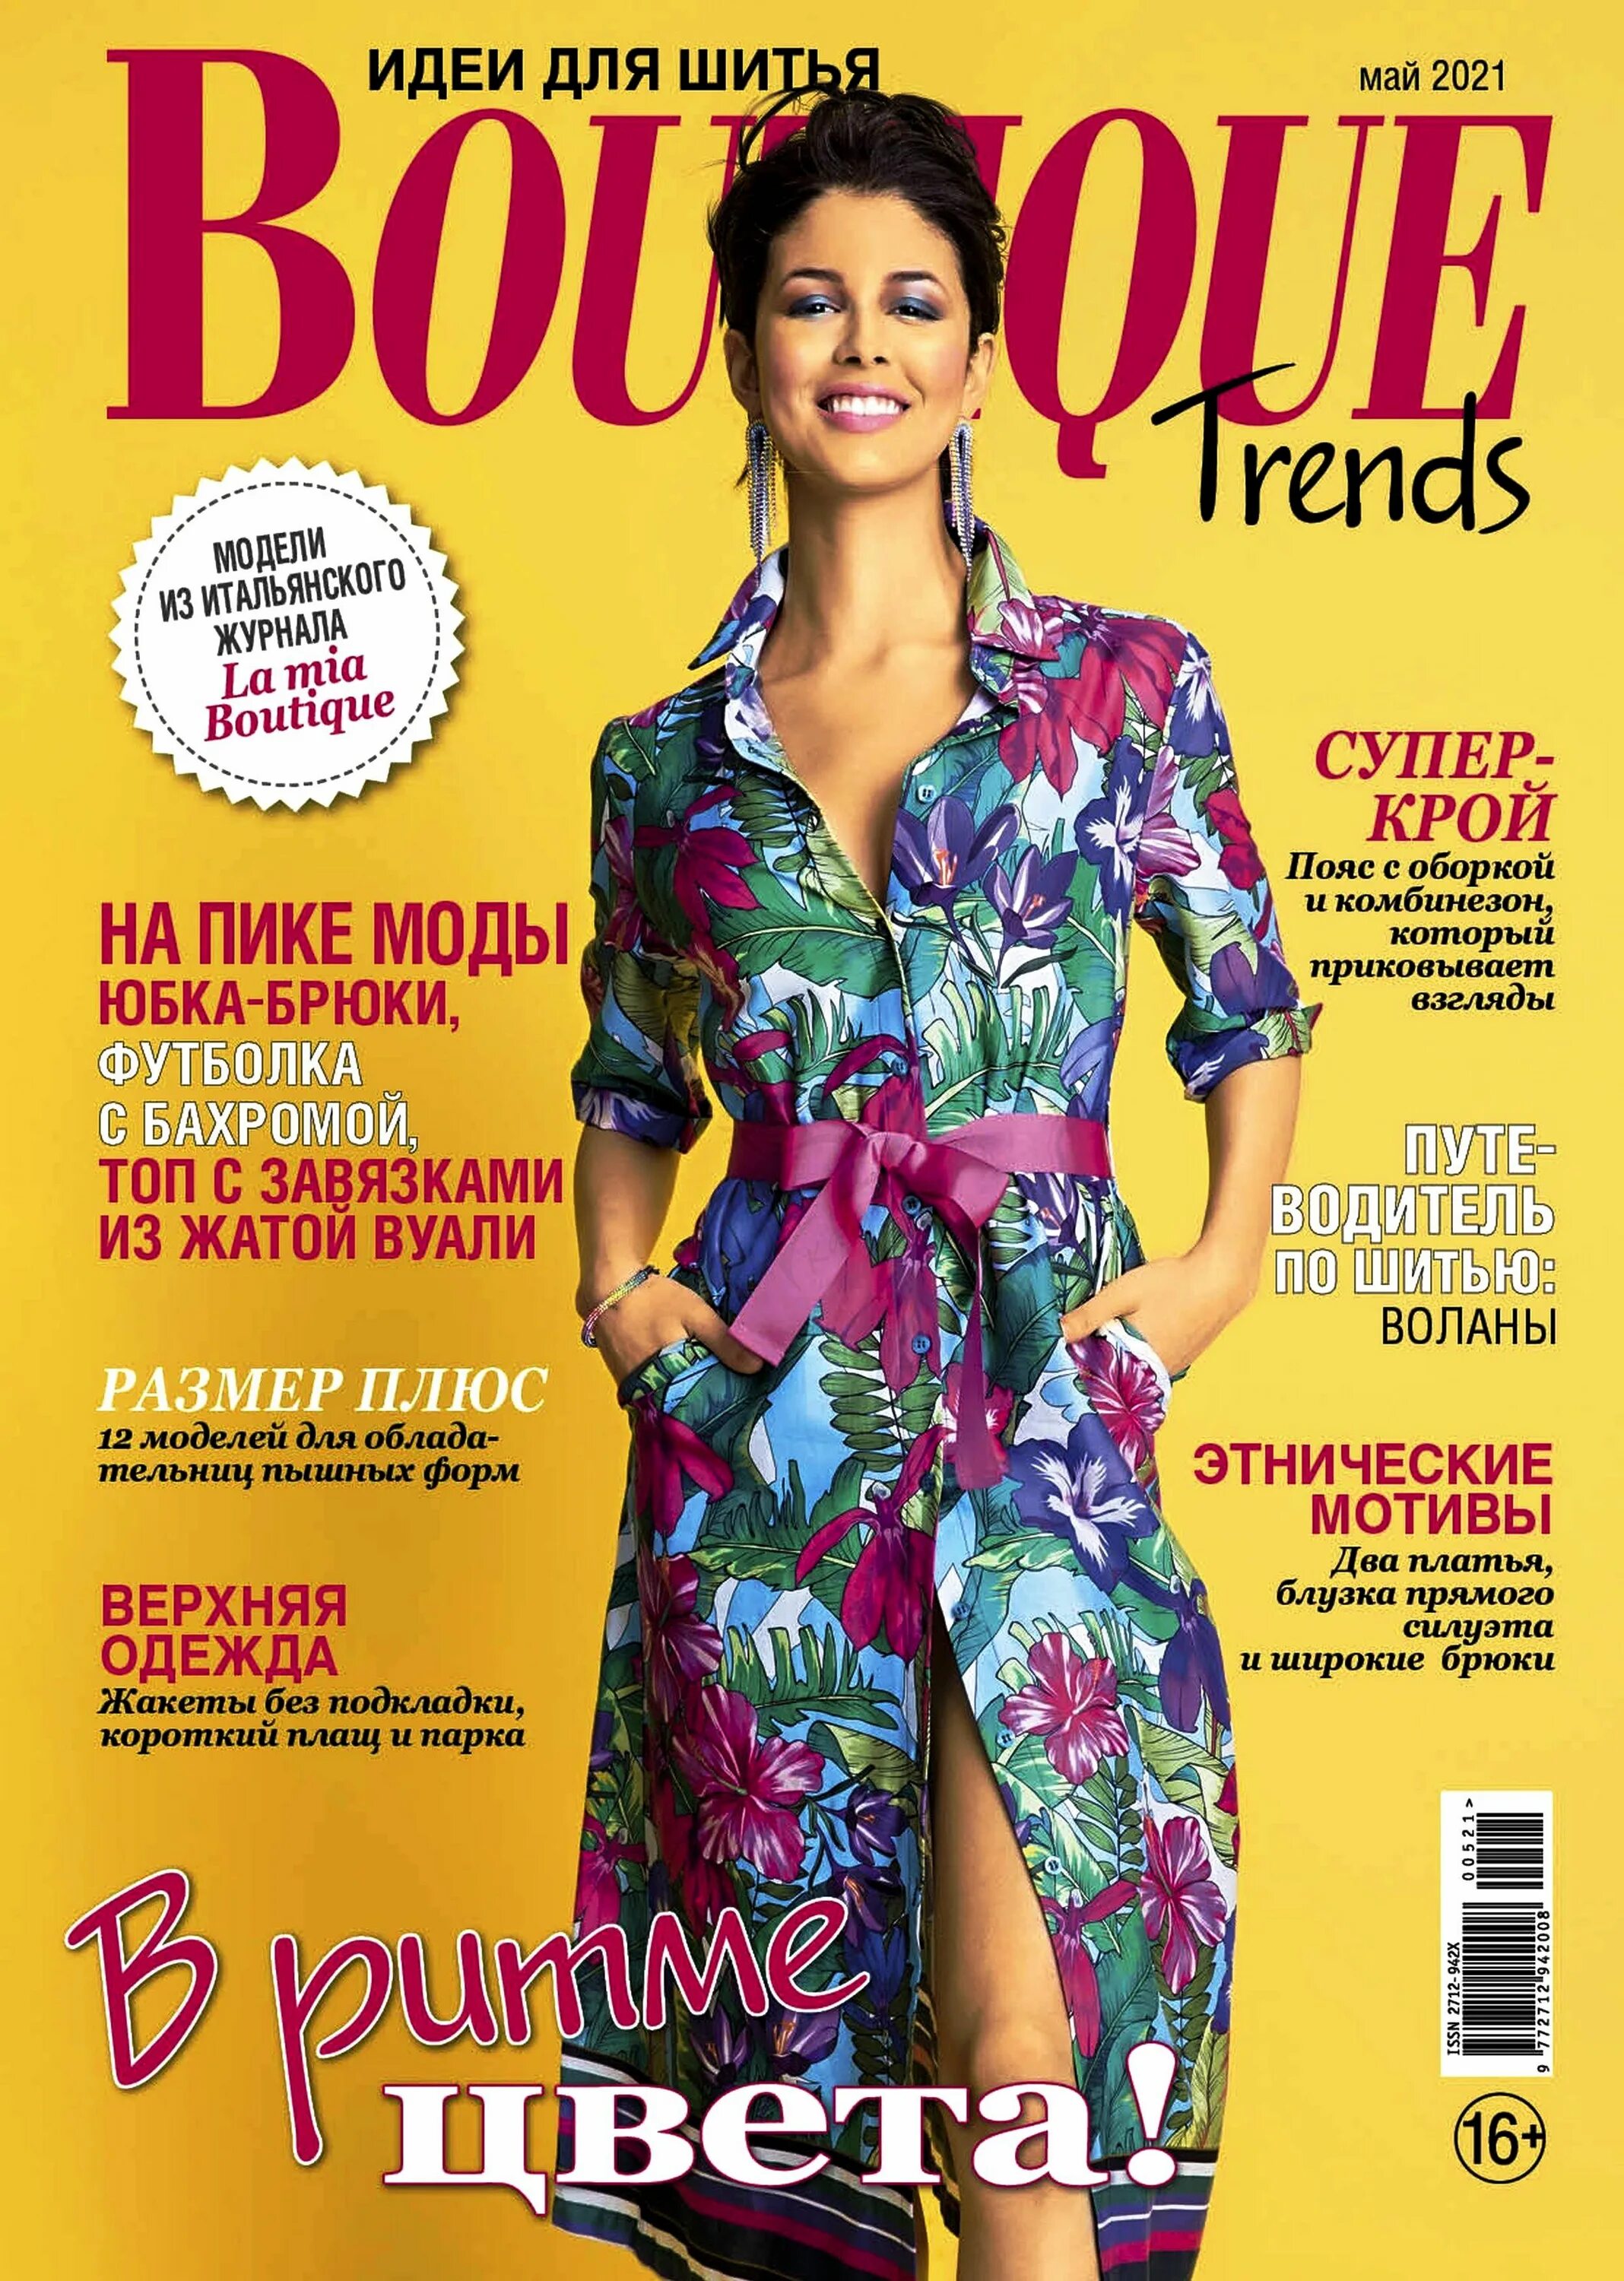 Trend boutique. Журнал Boutique trends 2021. Boutique журнал 5/2021. Журнал мод бутик. Итальянские журналы мод.